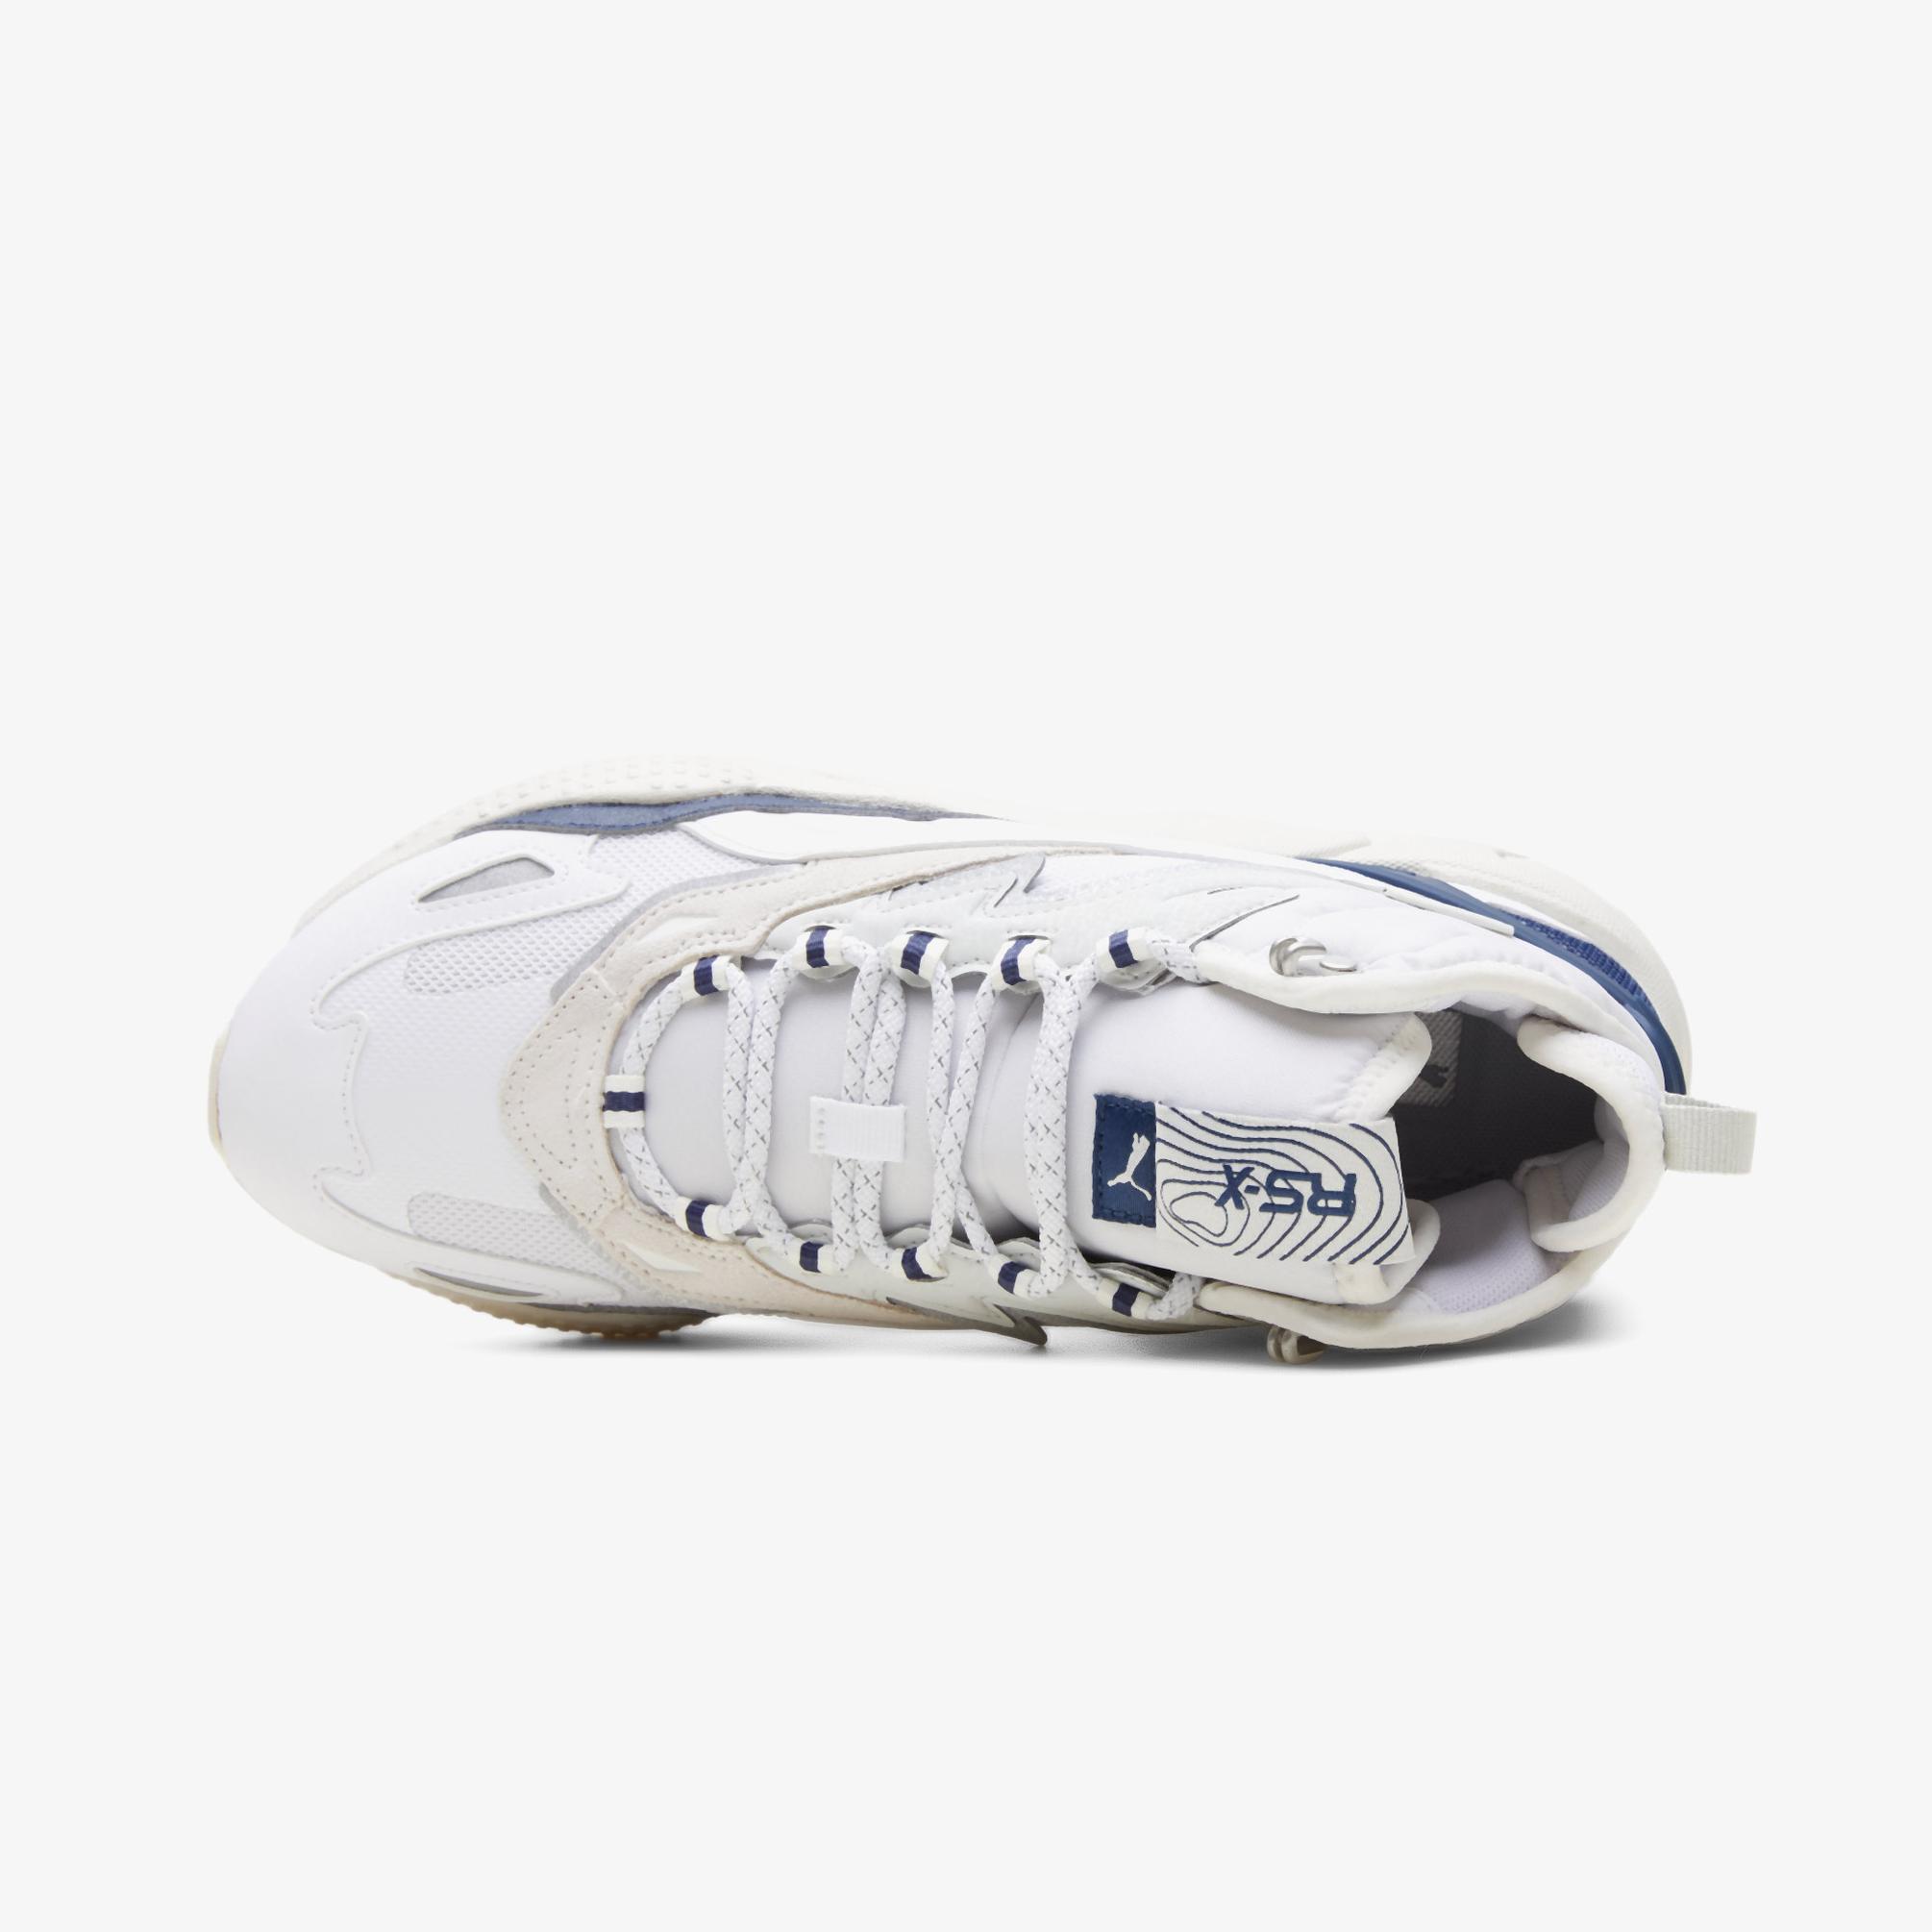  Puma RS-X Hi Erkek Beyaz Spor Ayakkabı